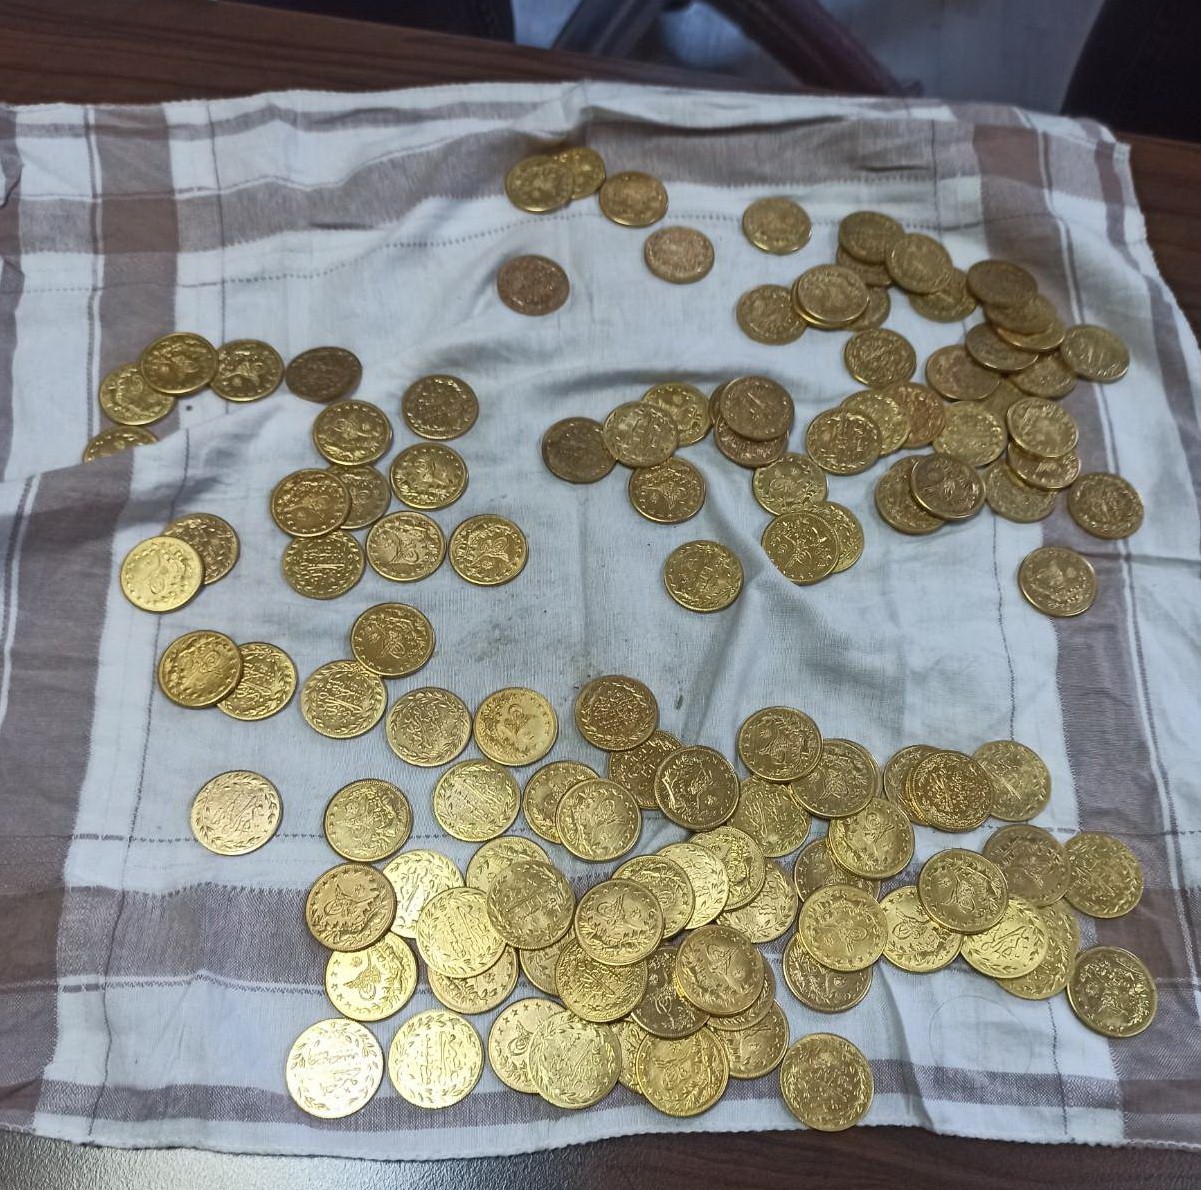 “Dedemde 120 Osmanlı altını var deyip dolandırmak istediler #manisa